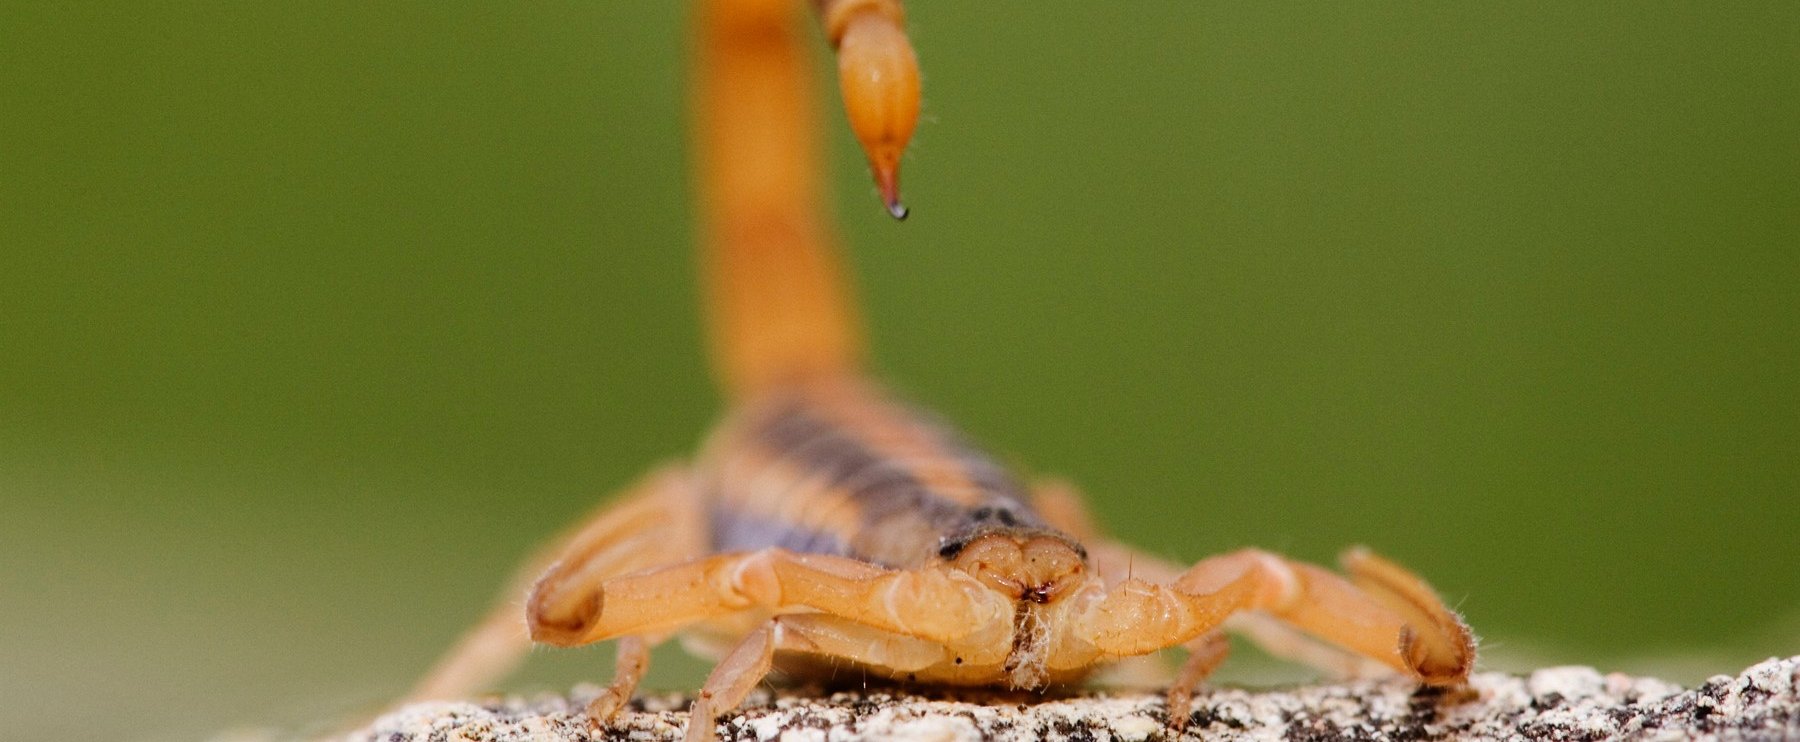 Skorpiót talált az akciós eperben a magyar vásárló, az igazi döbbenet csak ez után jött